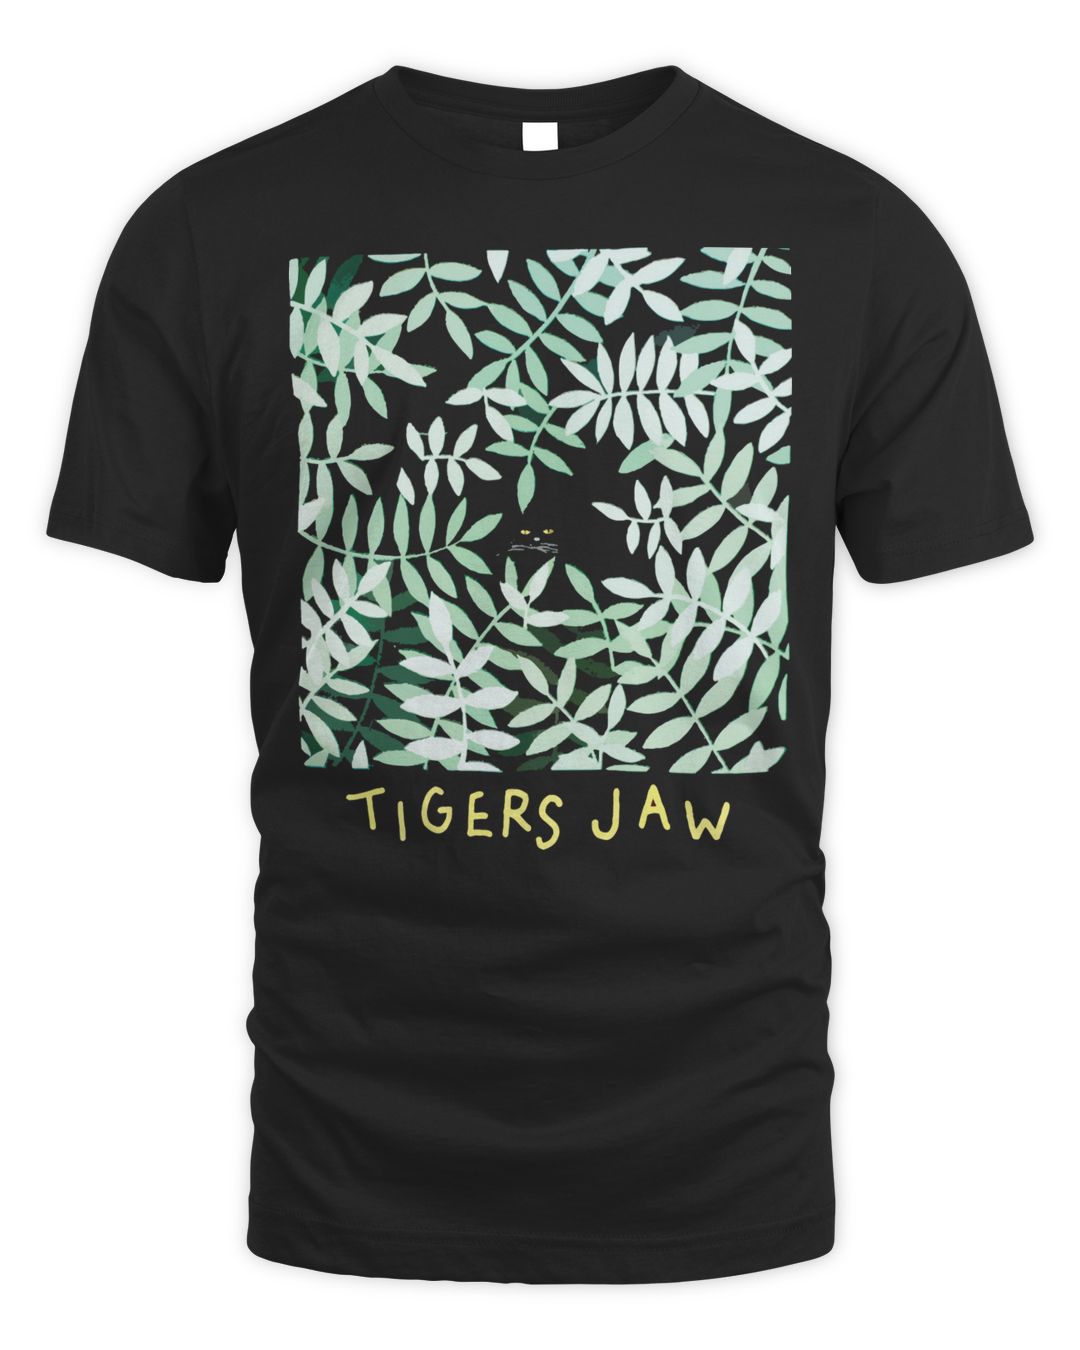 Tigers Jaw Merch Cat Fern Shirt